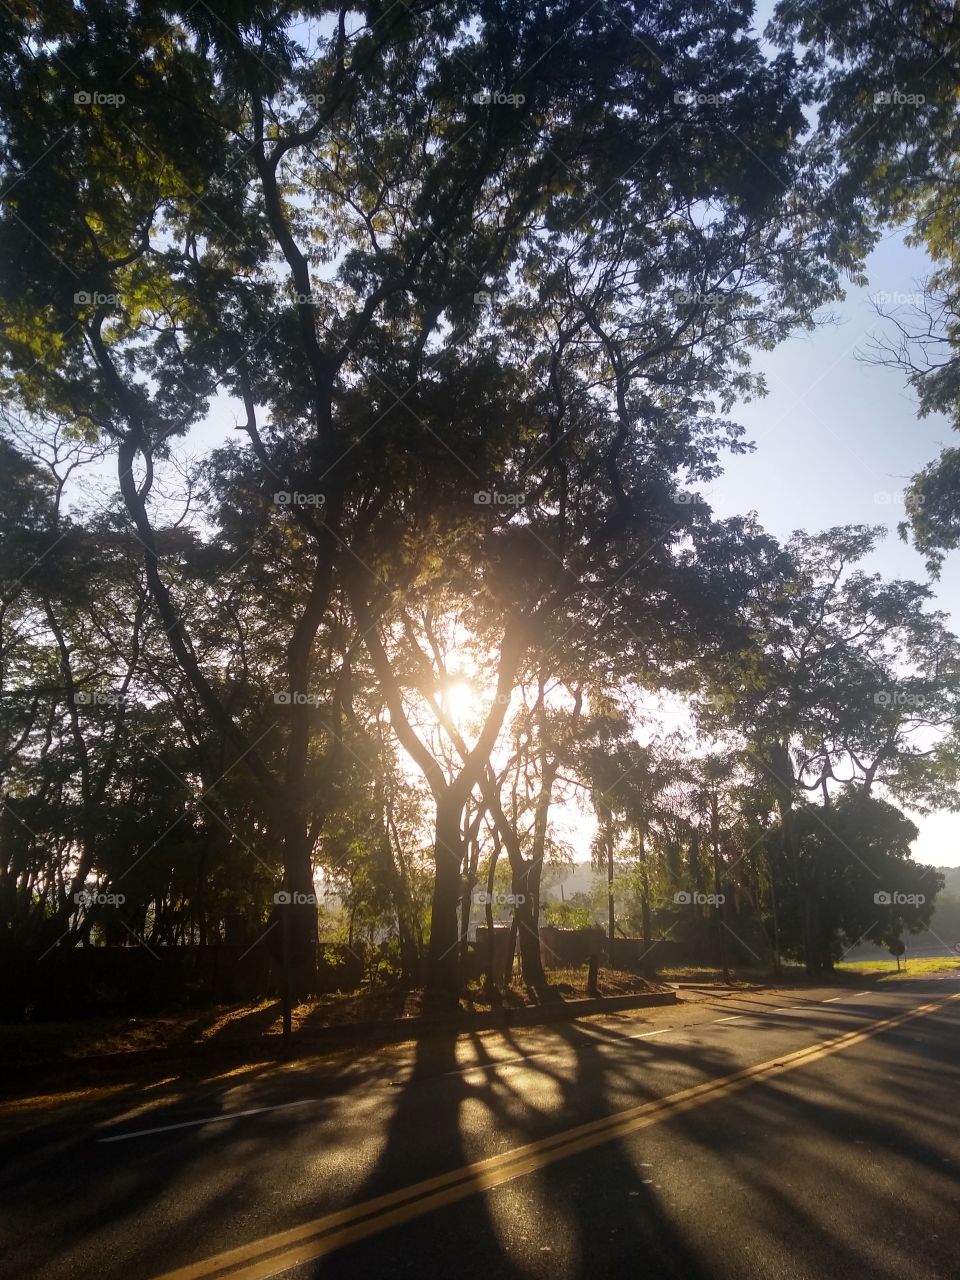 The sun comes up from behind the trees... O sol vem surgindo por detrás das árvores...